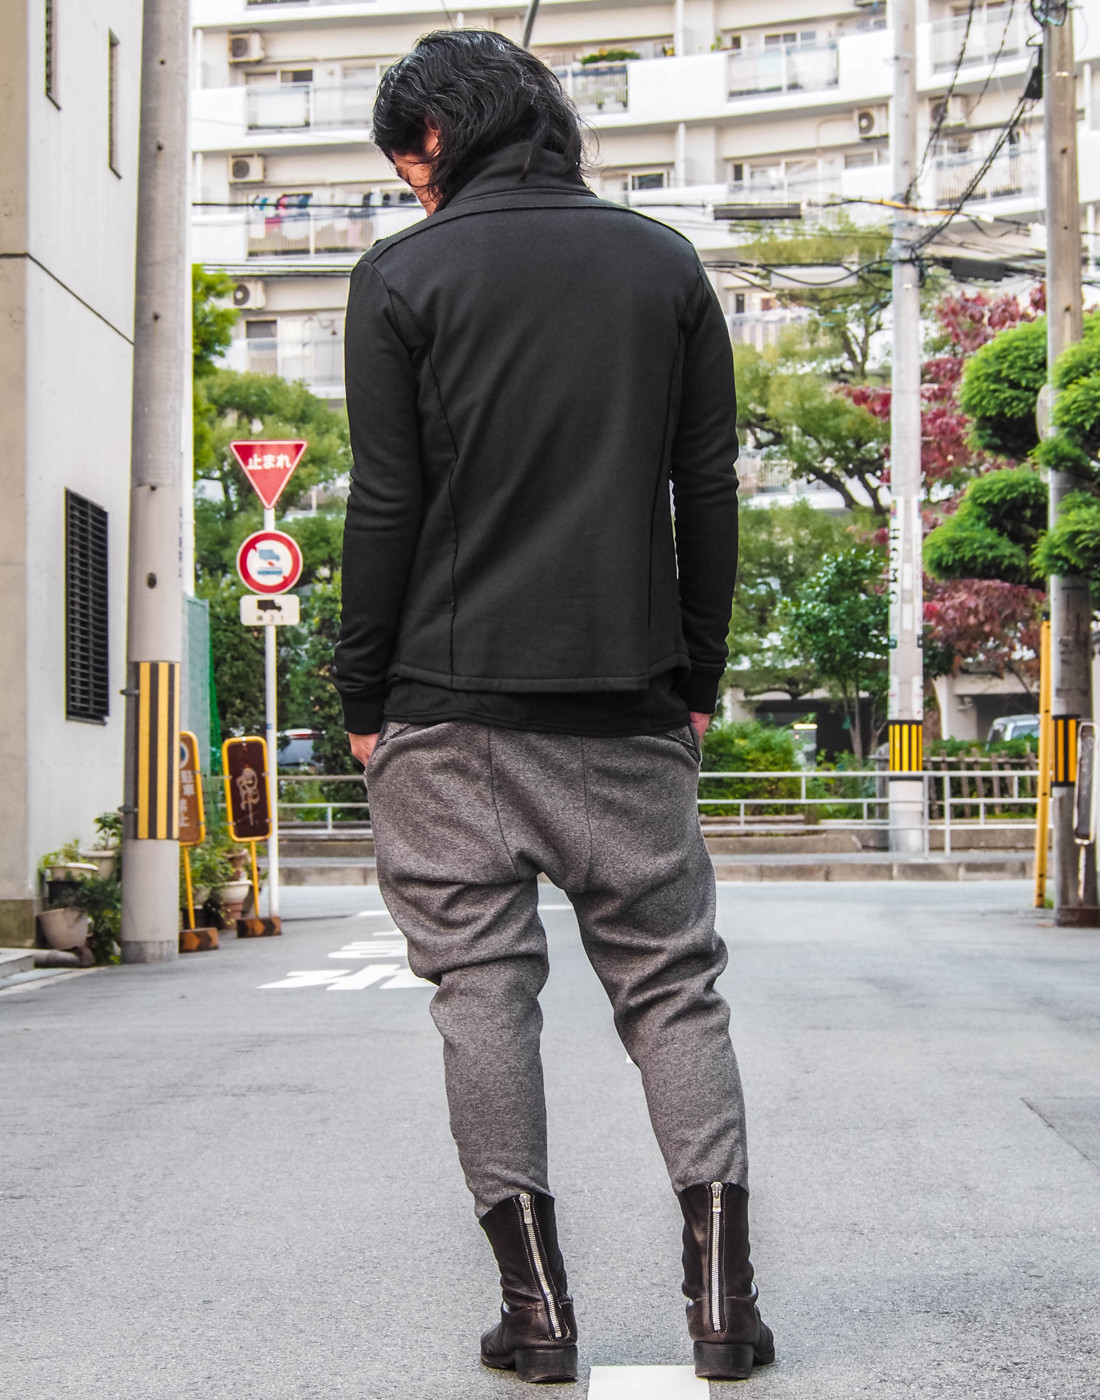 ツイードパンツのオシャレ感 秋冬にぴったりの素材感でやみつきに Zero メンズ ユニセックスブランド ファッション 日本製 ホームページ